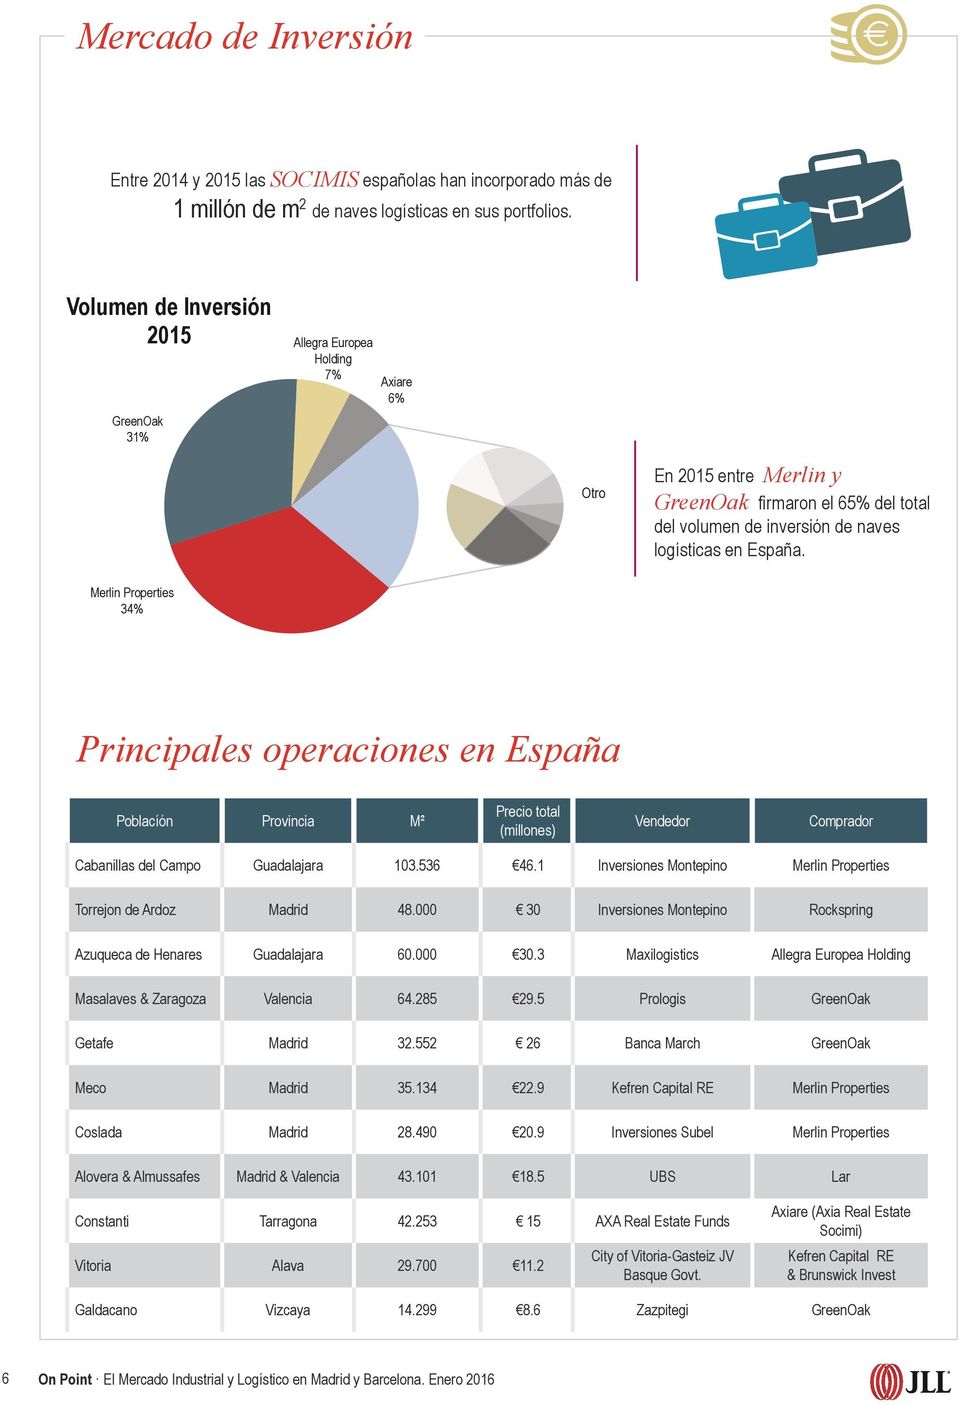 Merlin Properties 34% Principales operaciones en España Poblacíón Provincia M² Precio total (millones) Vendedor Comprador Cabanillas del Campo Guadalajara 103.536 46.